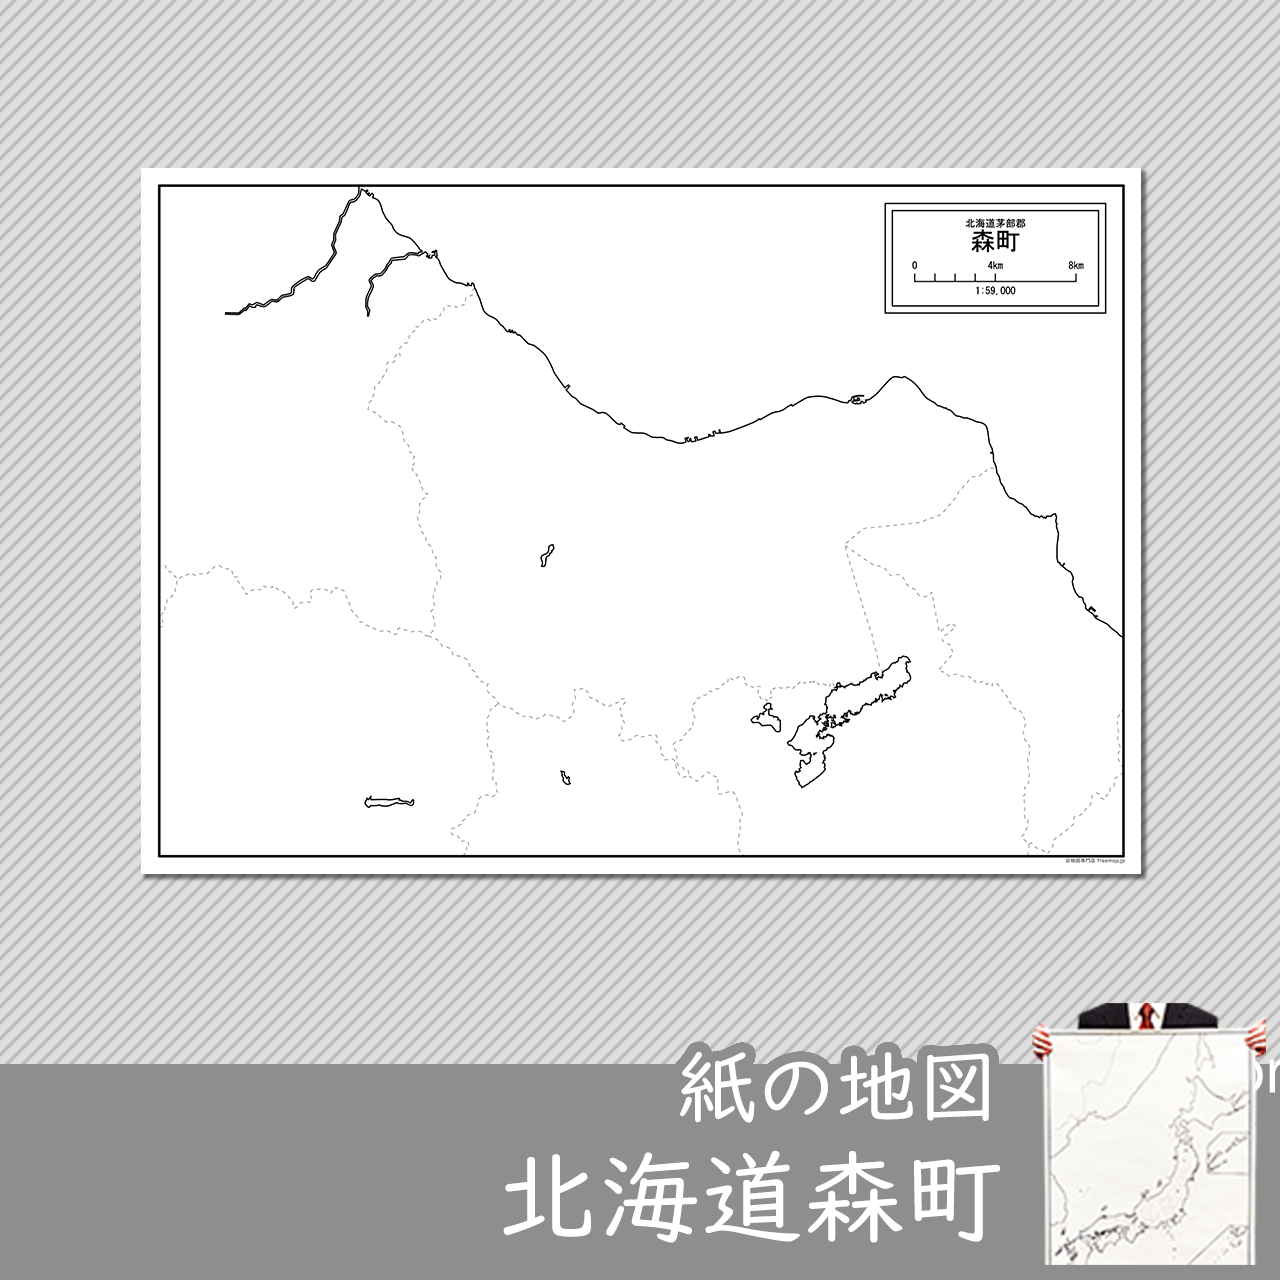 森町の紙の白地図のサムネイル